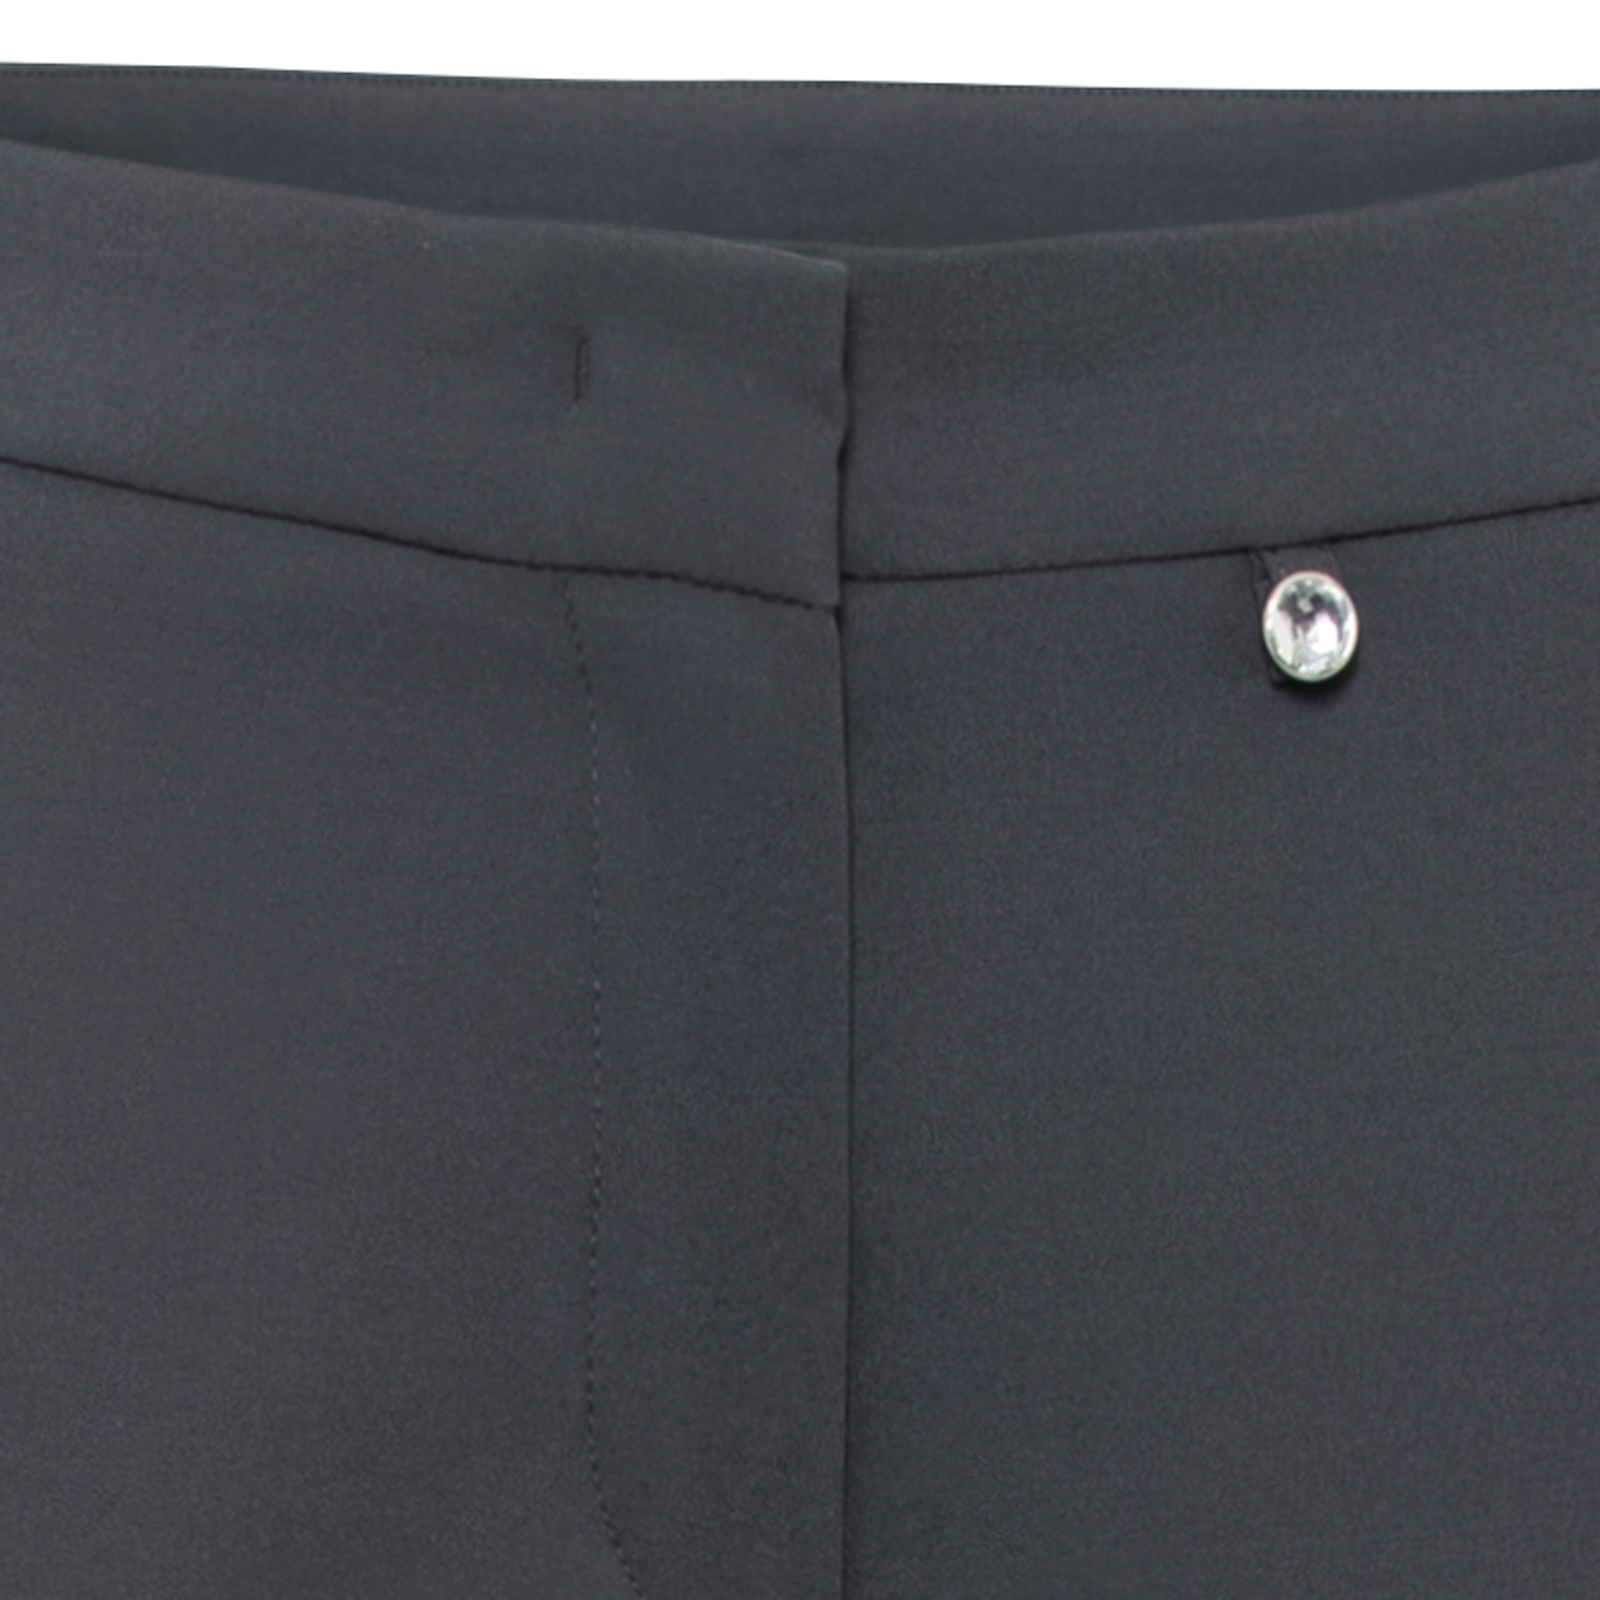 Pantalones de golf con elasticidad en 4 direcciones y un sofisticado bolsillo lateral para mujer